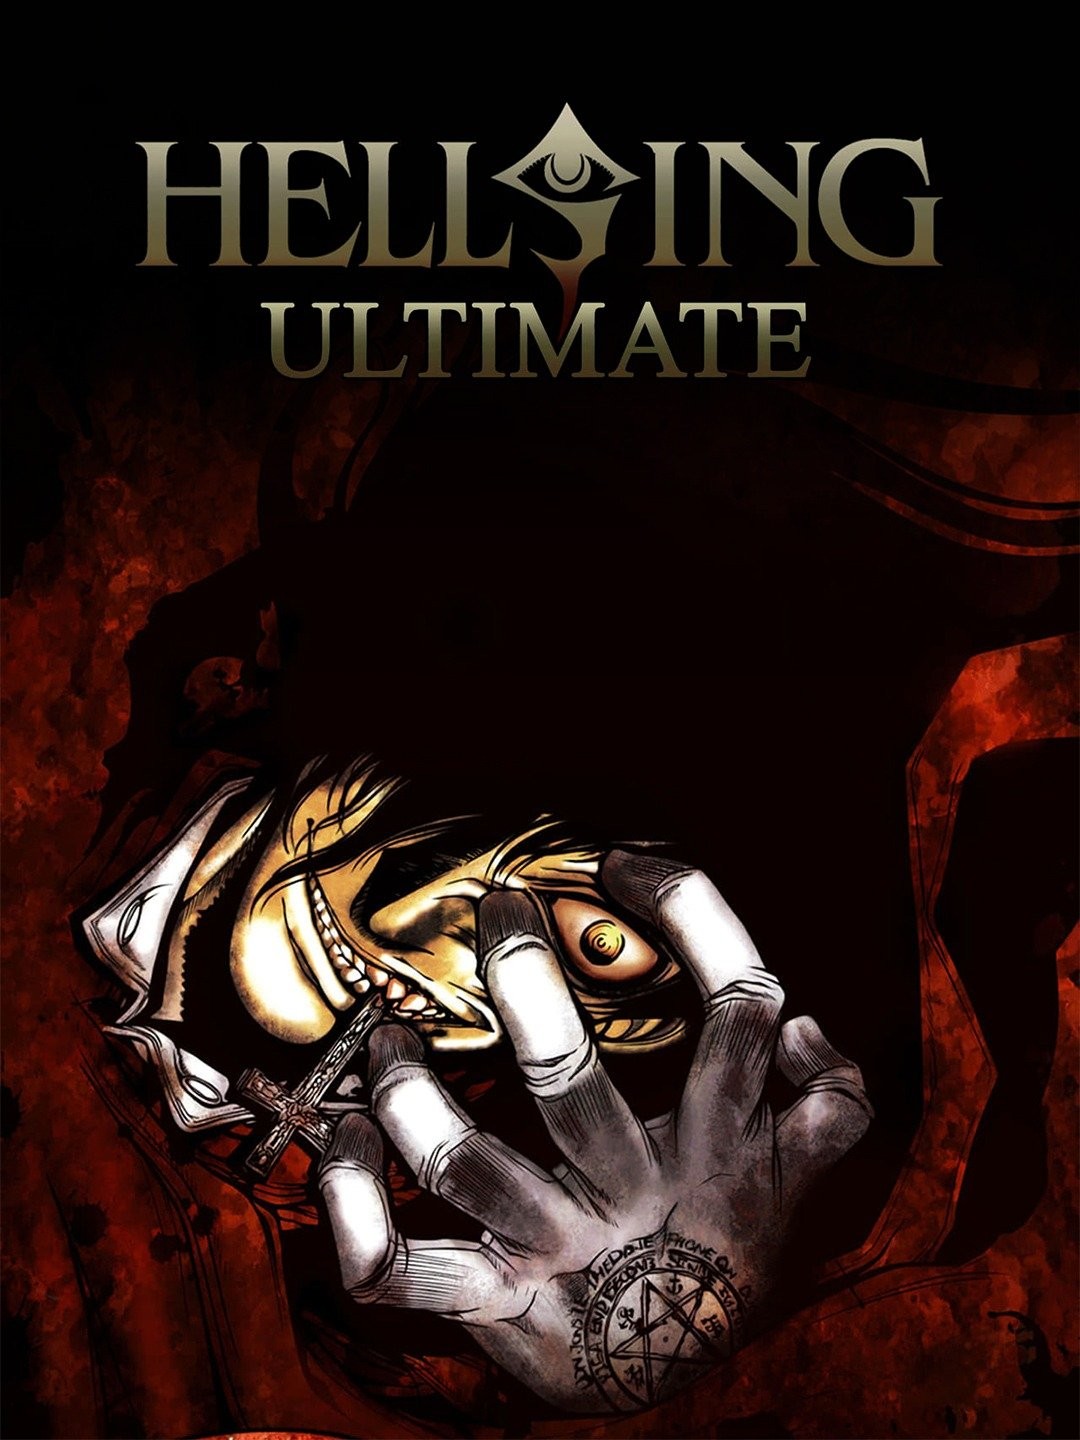 Prime Video: Hellsing